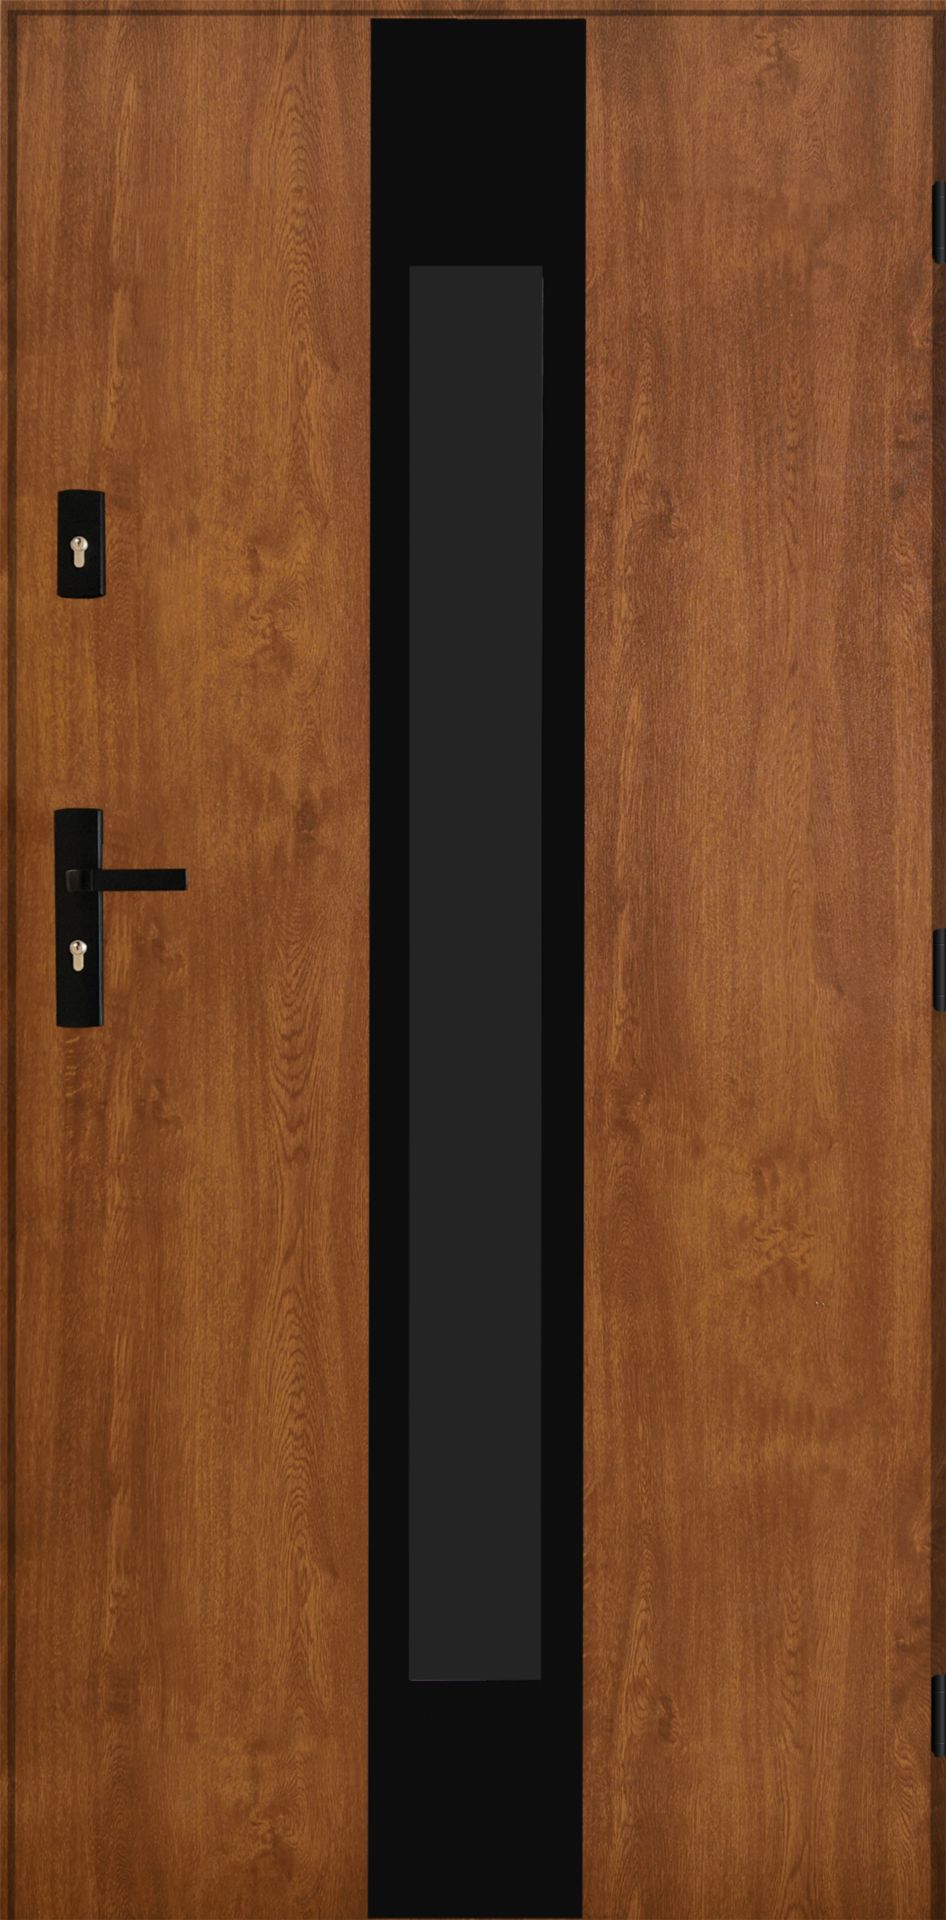 Doors BX 34 72mm